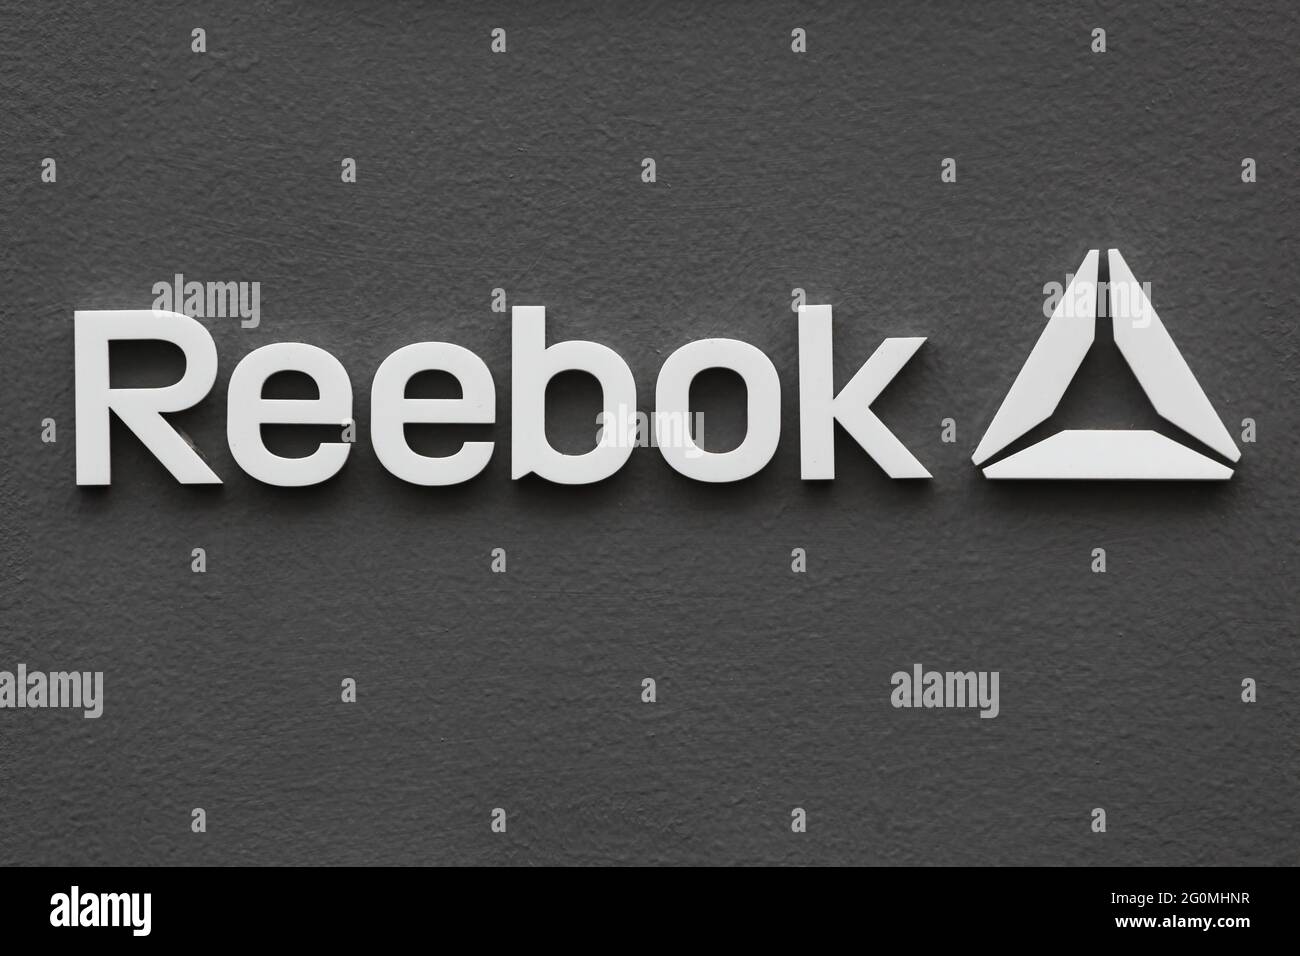 Kopenhagen, Dänemark - 20. August 2020: Reebok-Logo an der Wand. Reebok ist ein weltweit tätiges Unternehmen für sportliche Schuhe und Bekleidung Stockfoto